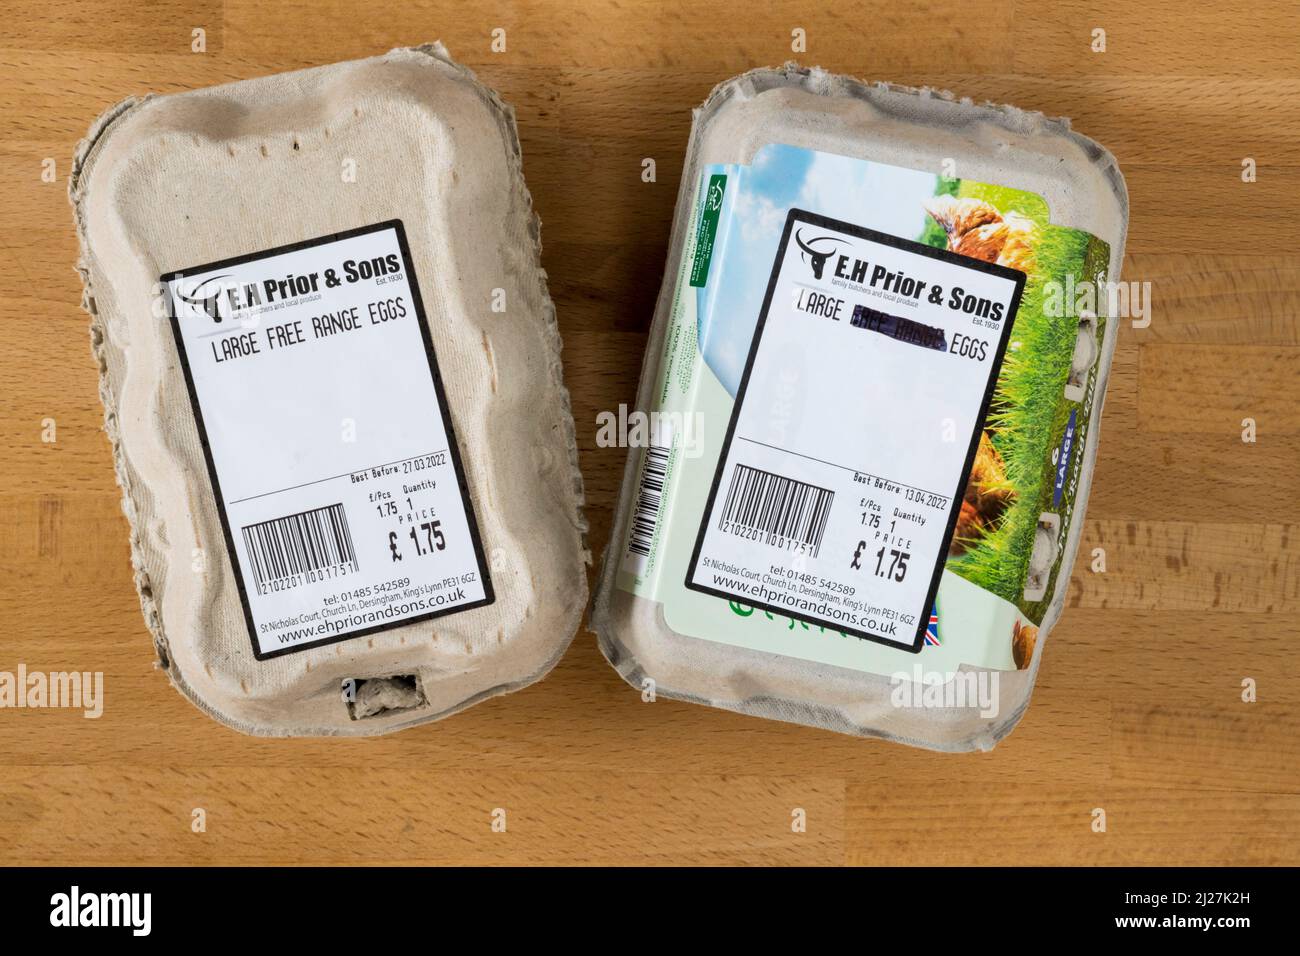 Etiquetas de cajas de huevos modificadas por la tienda para mostrar que los huevos ya no pueden ser descritos como de libre rango mientras que las gallinas se alojaron en el interior durante el brote de gripe aviar de 2022 Foto de stock